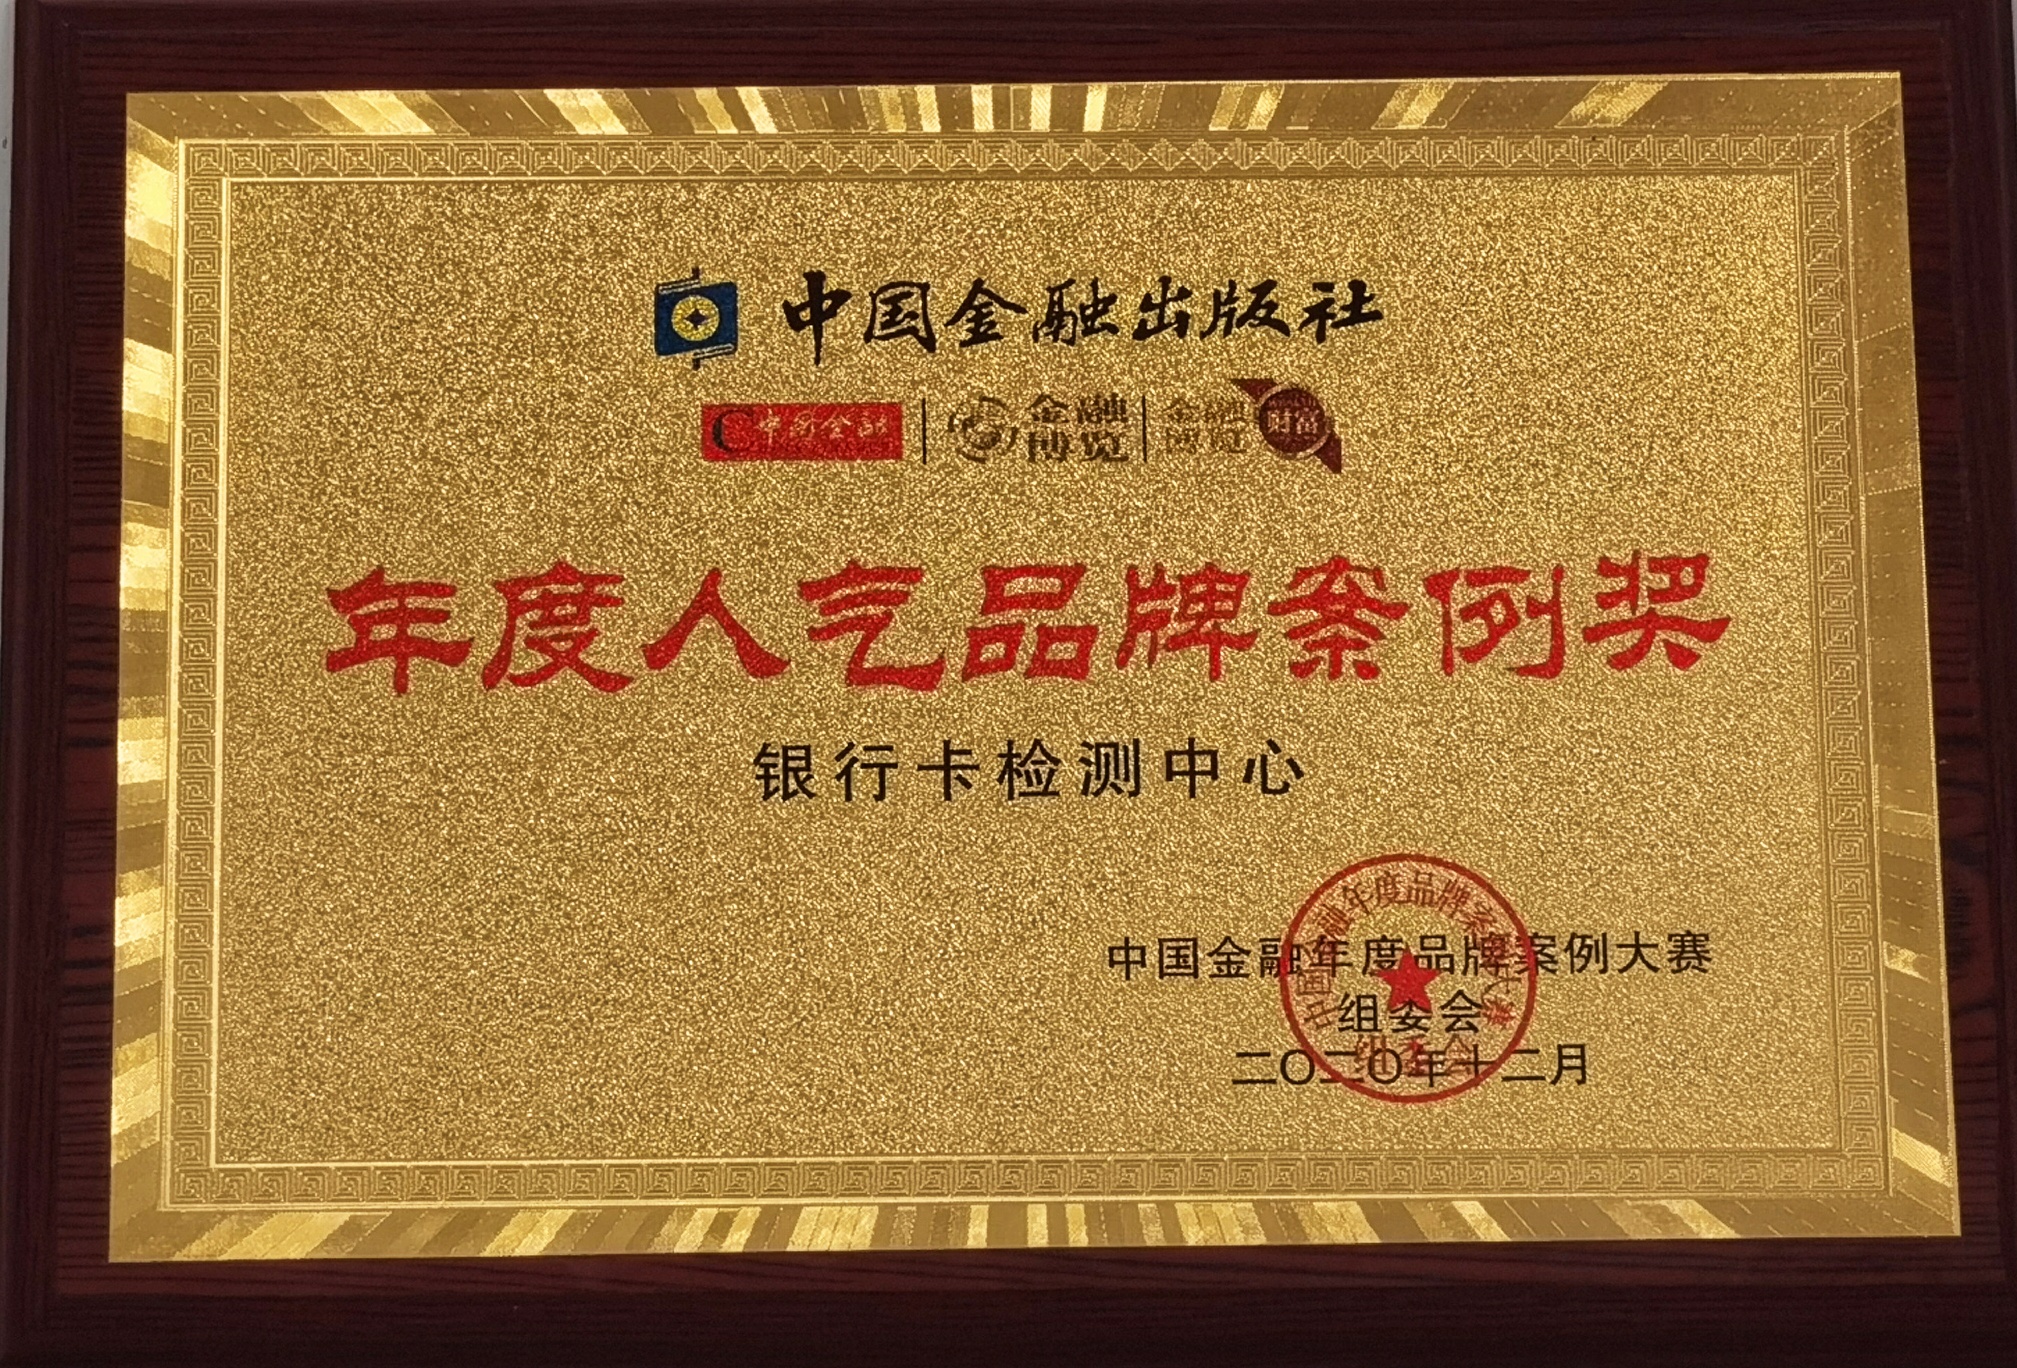 BCTC荣获第三届中国金融年度品牌案例大赛 “年度人气品牌案例奖”